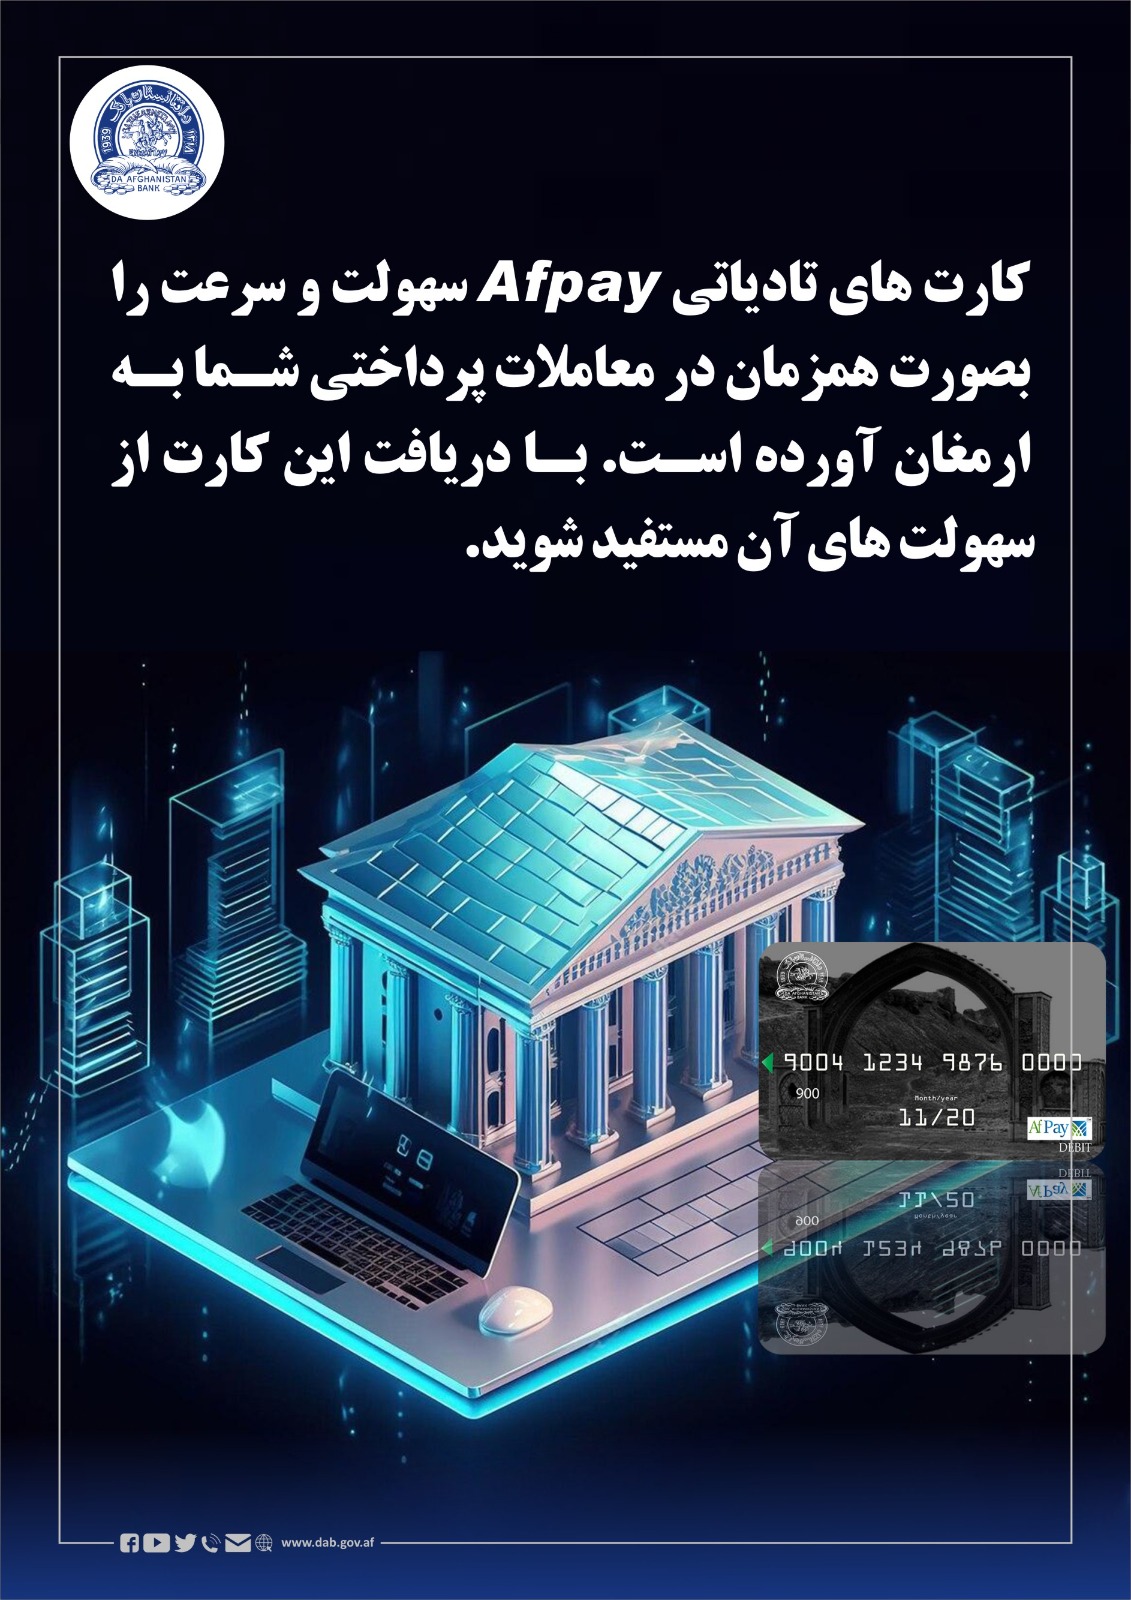 کارت های تادیاتی Afpay سهولت و سرعت را بصورت همزامان در معاملات پرداختی شما به ارمغان آورده است